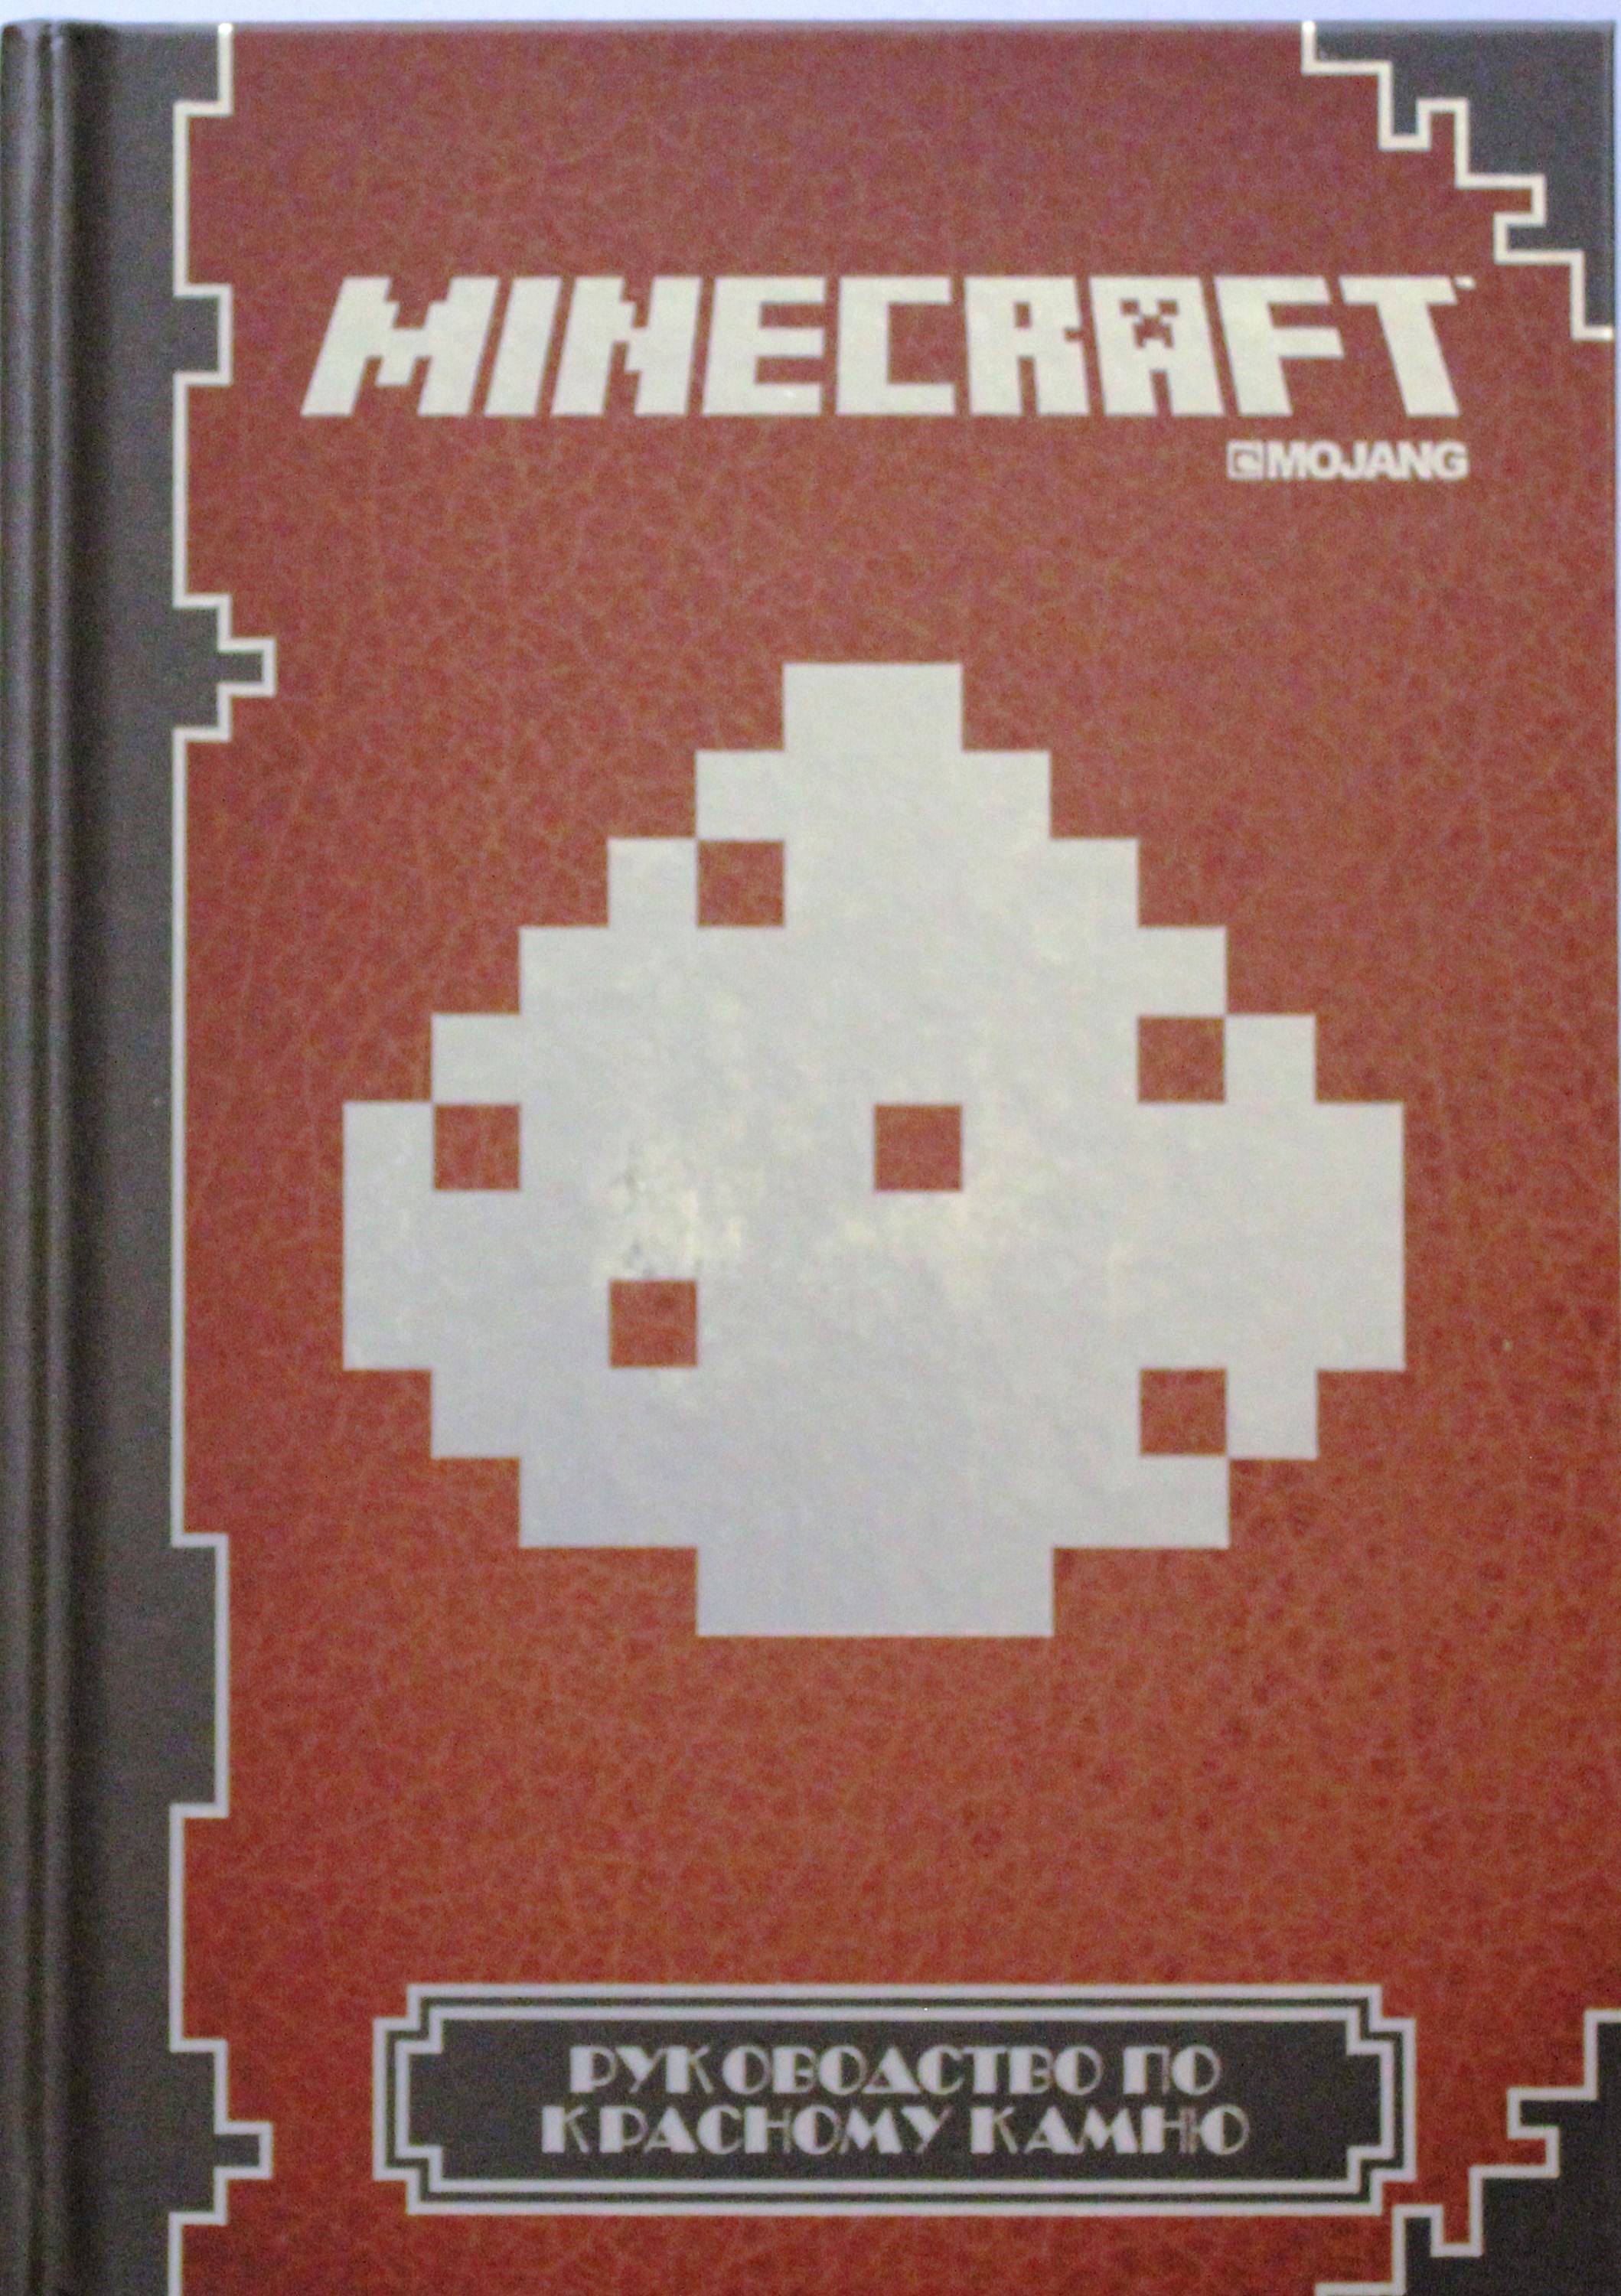 Сколько книг майнкрафт. Руководство по красному камню Minecraft. Майнкрафт книги по руководство. Книга майнкрафт руководство по красному камню. Книжка по майнкрафту красный камень.